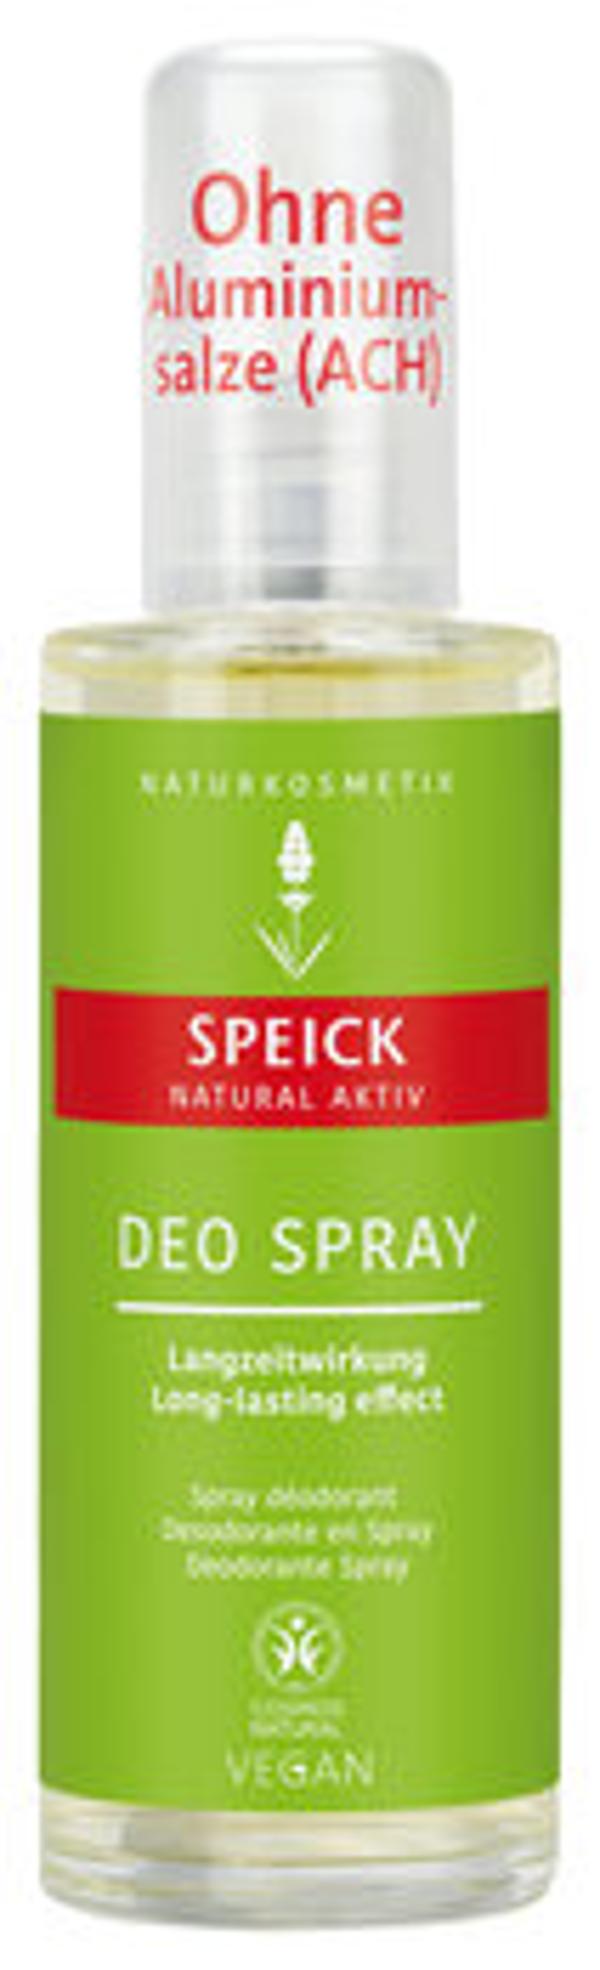 Produktfoto zu Natural Aktiv Deo Spray